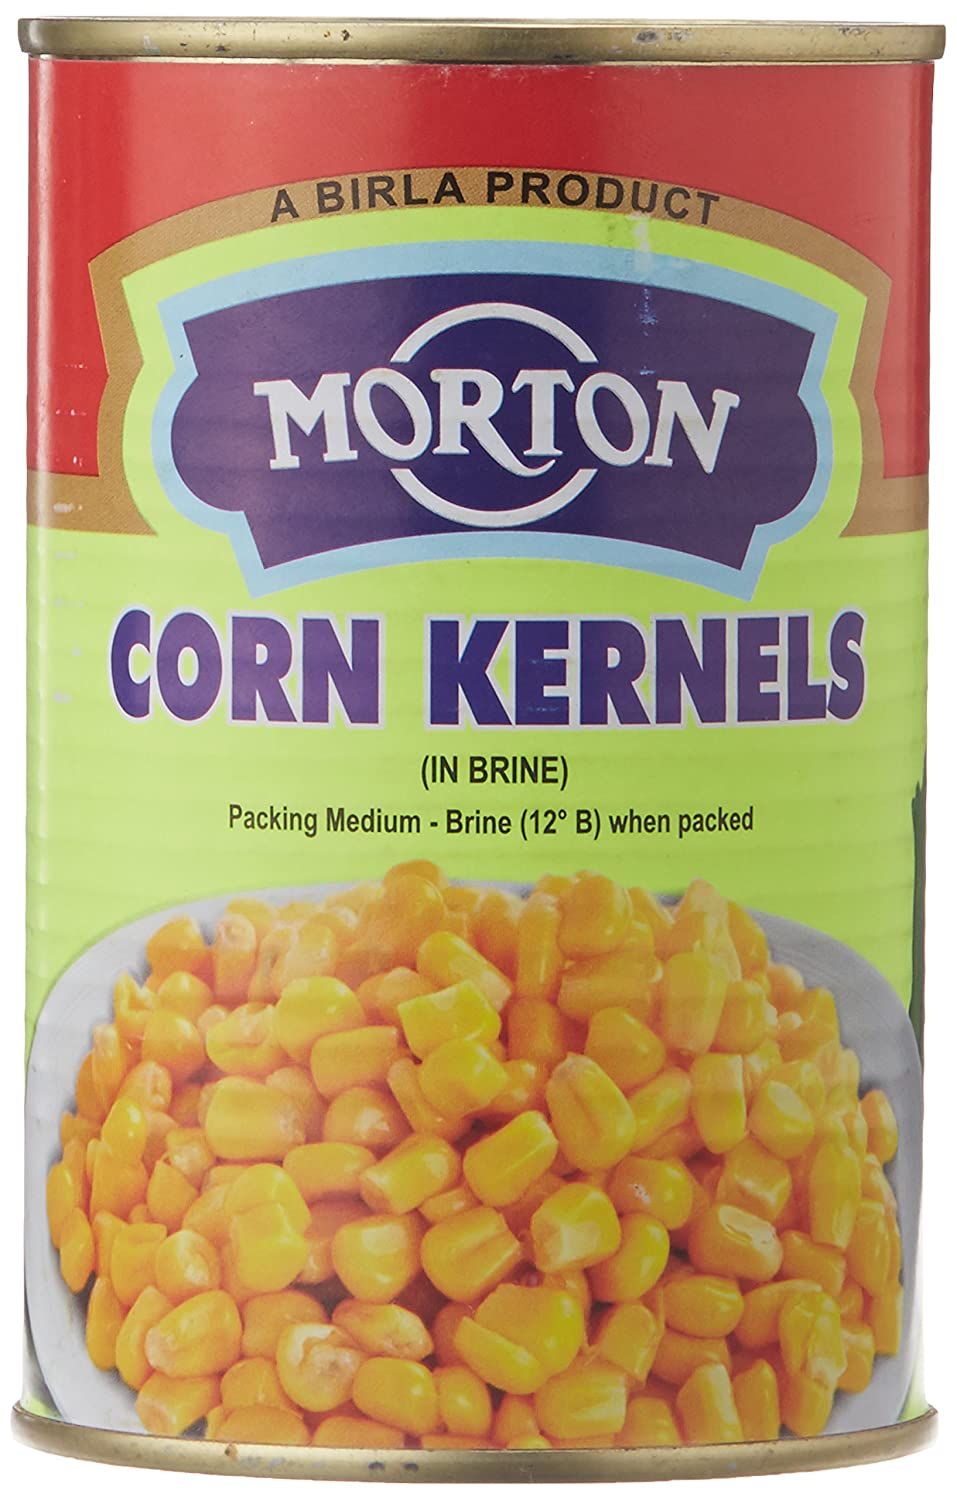 Morton Corn Kernels Image